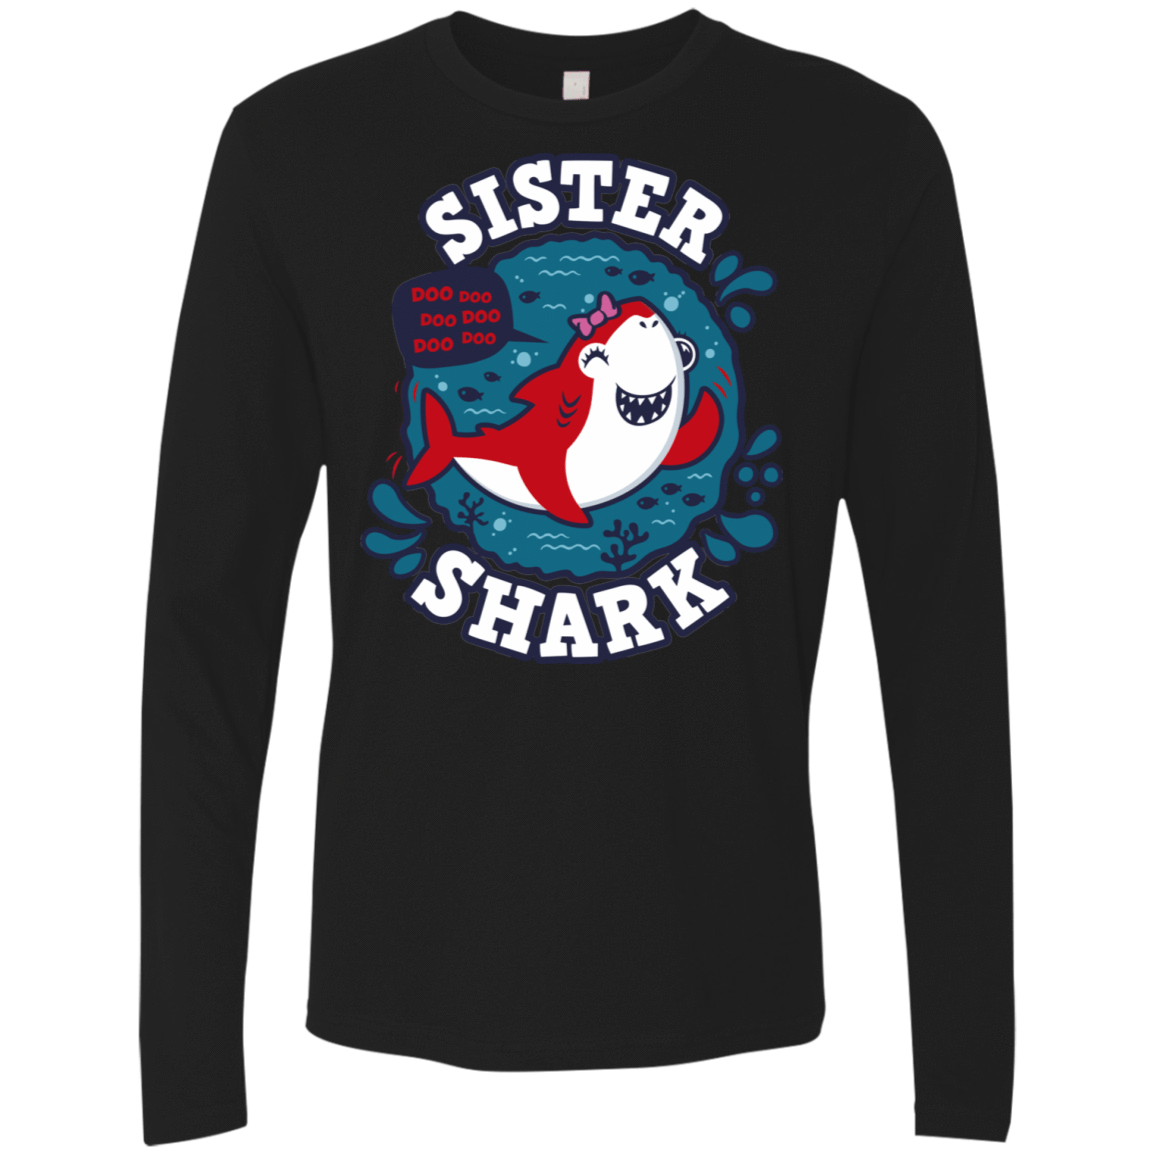 T-Shirts Black / S Shark Family trazo - Sister Men's Premium Long Sleeve